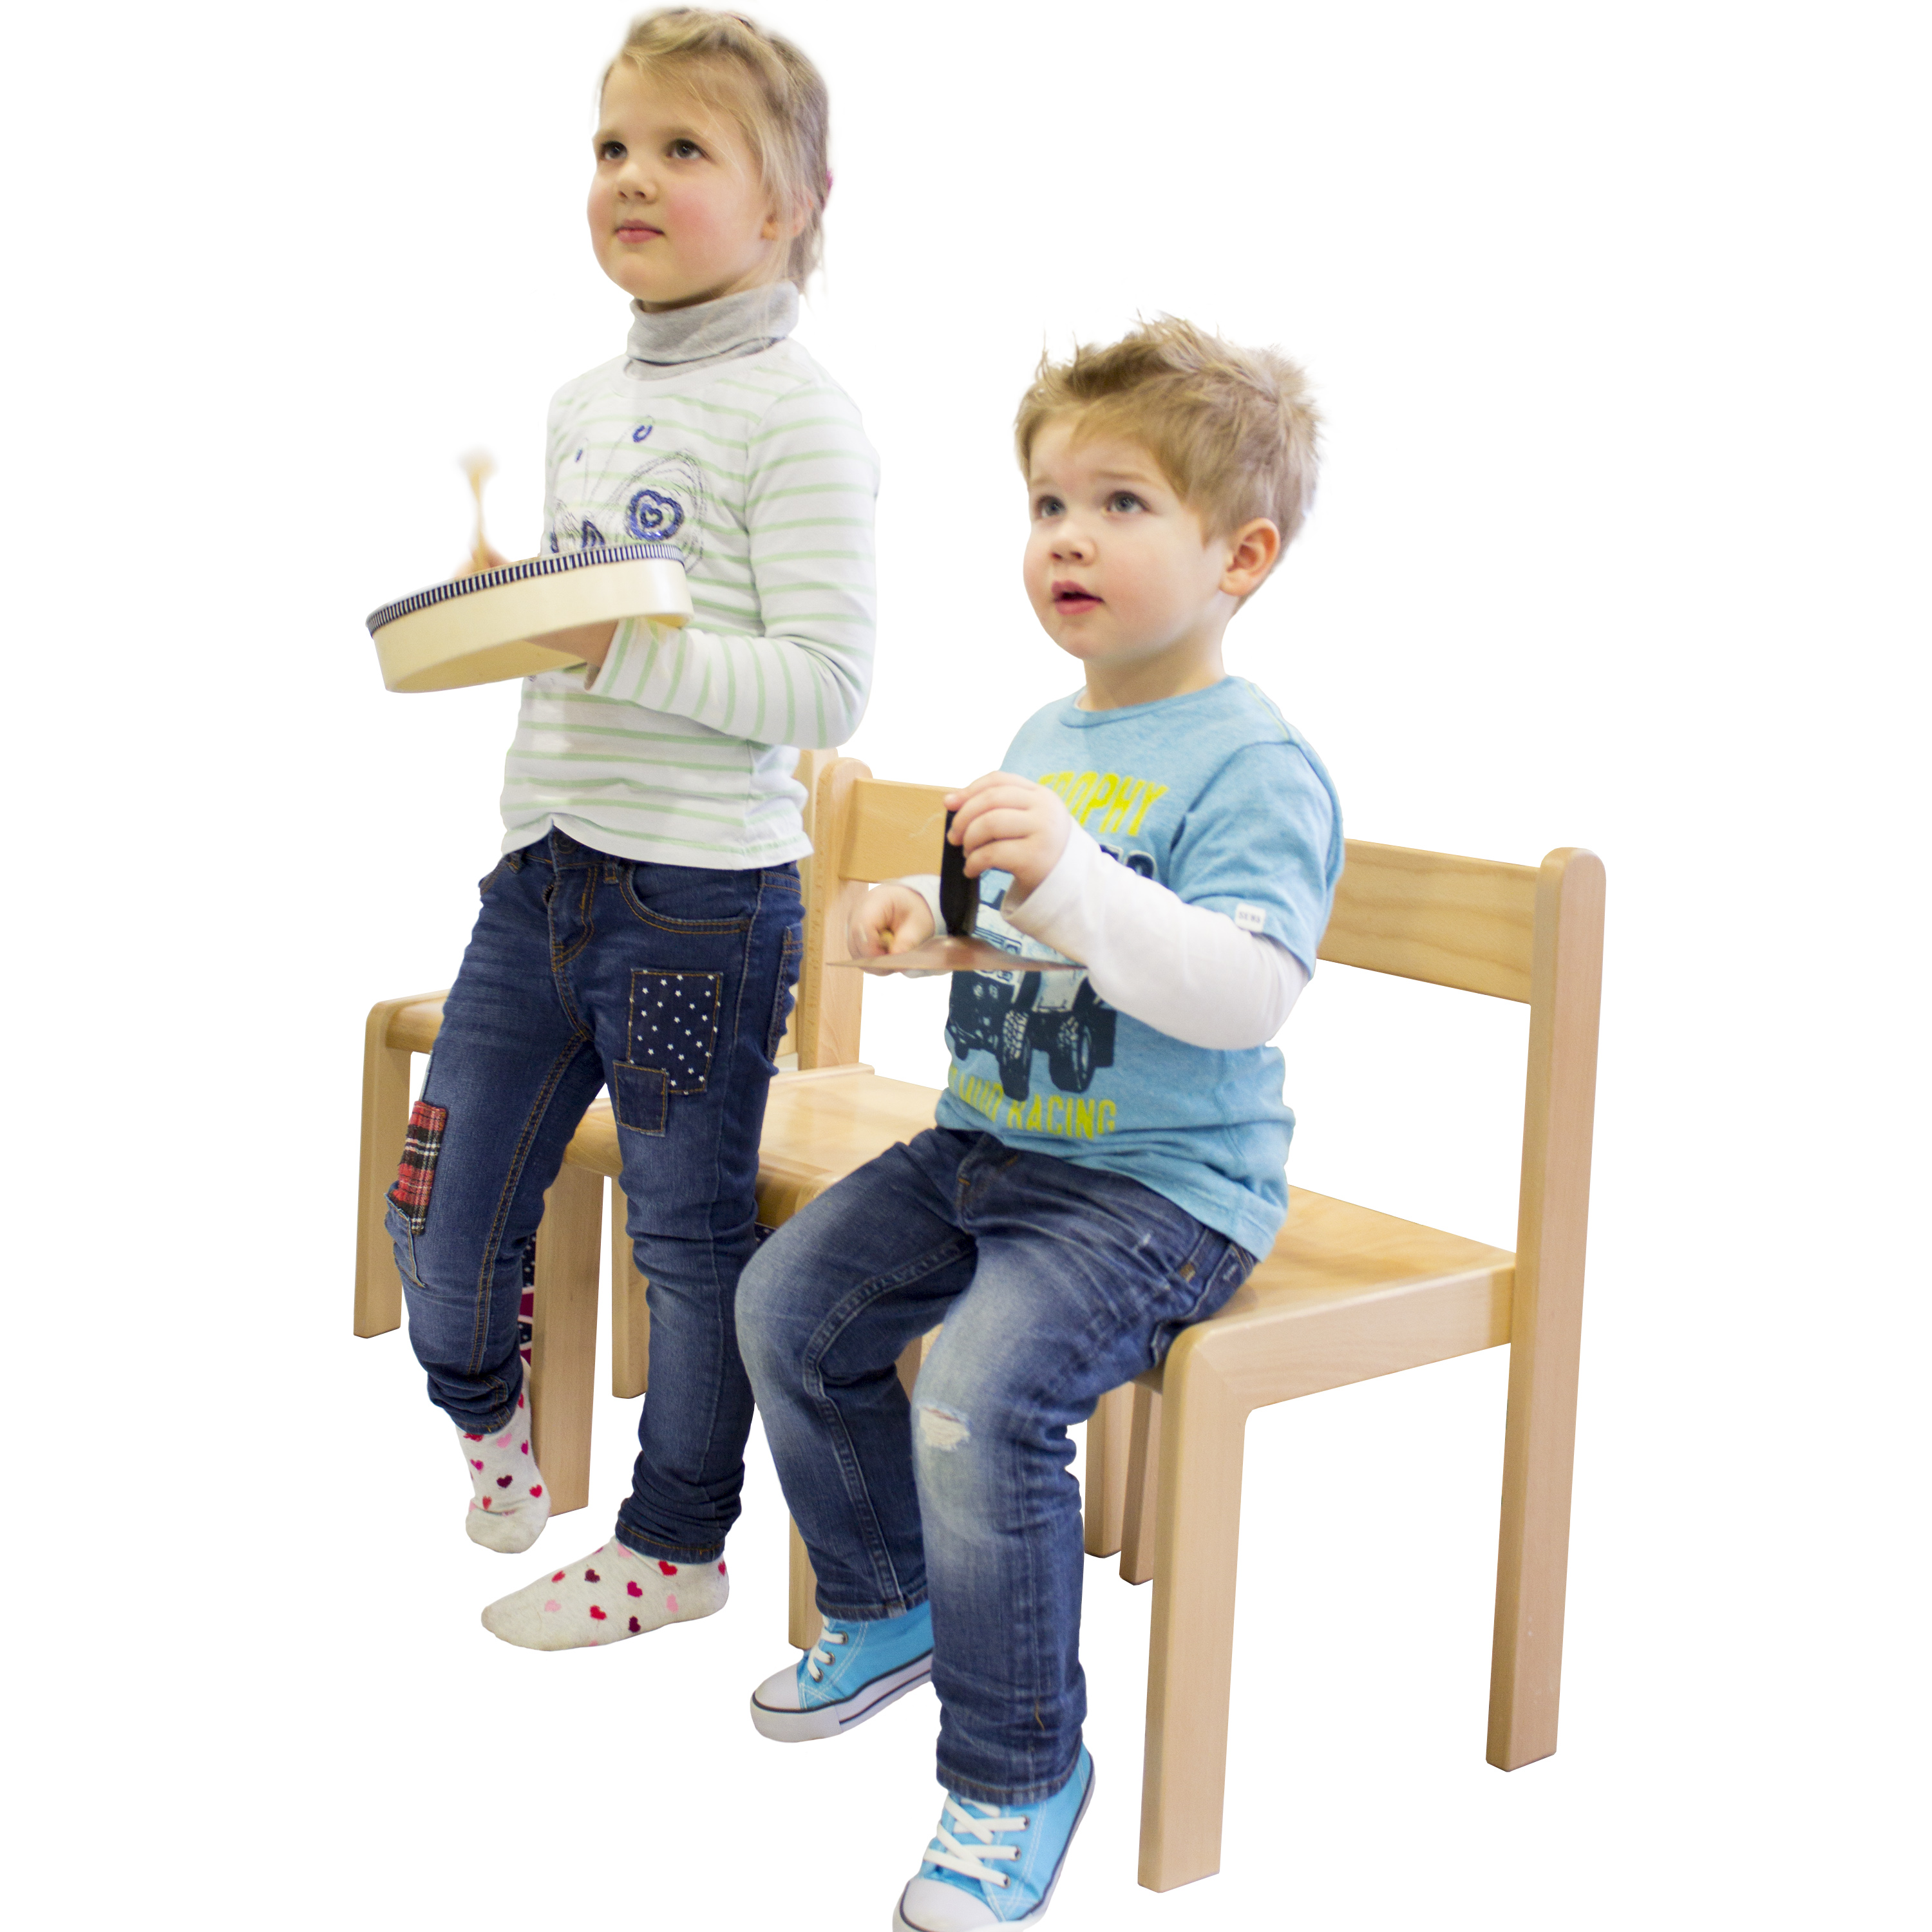 Kindergartenstuhl 'JANNIS', stapelbar, Sitzhöhe 31 cm